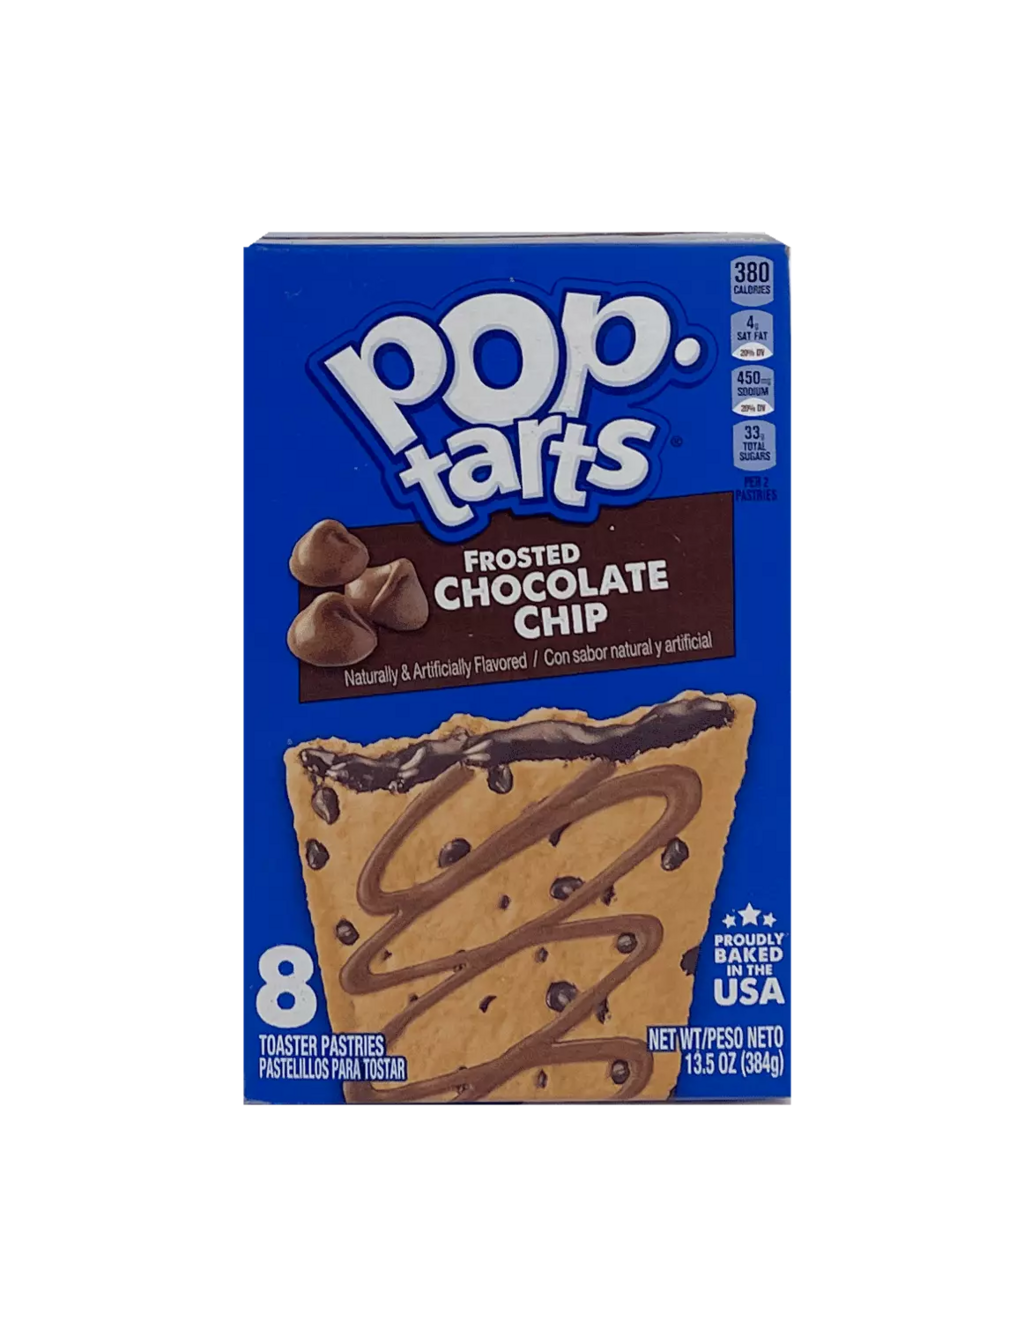 Kellogg’s Pop-tarts 家乐氏 夹心土司饼干 巧克力饼干风味 384g 美国